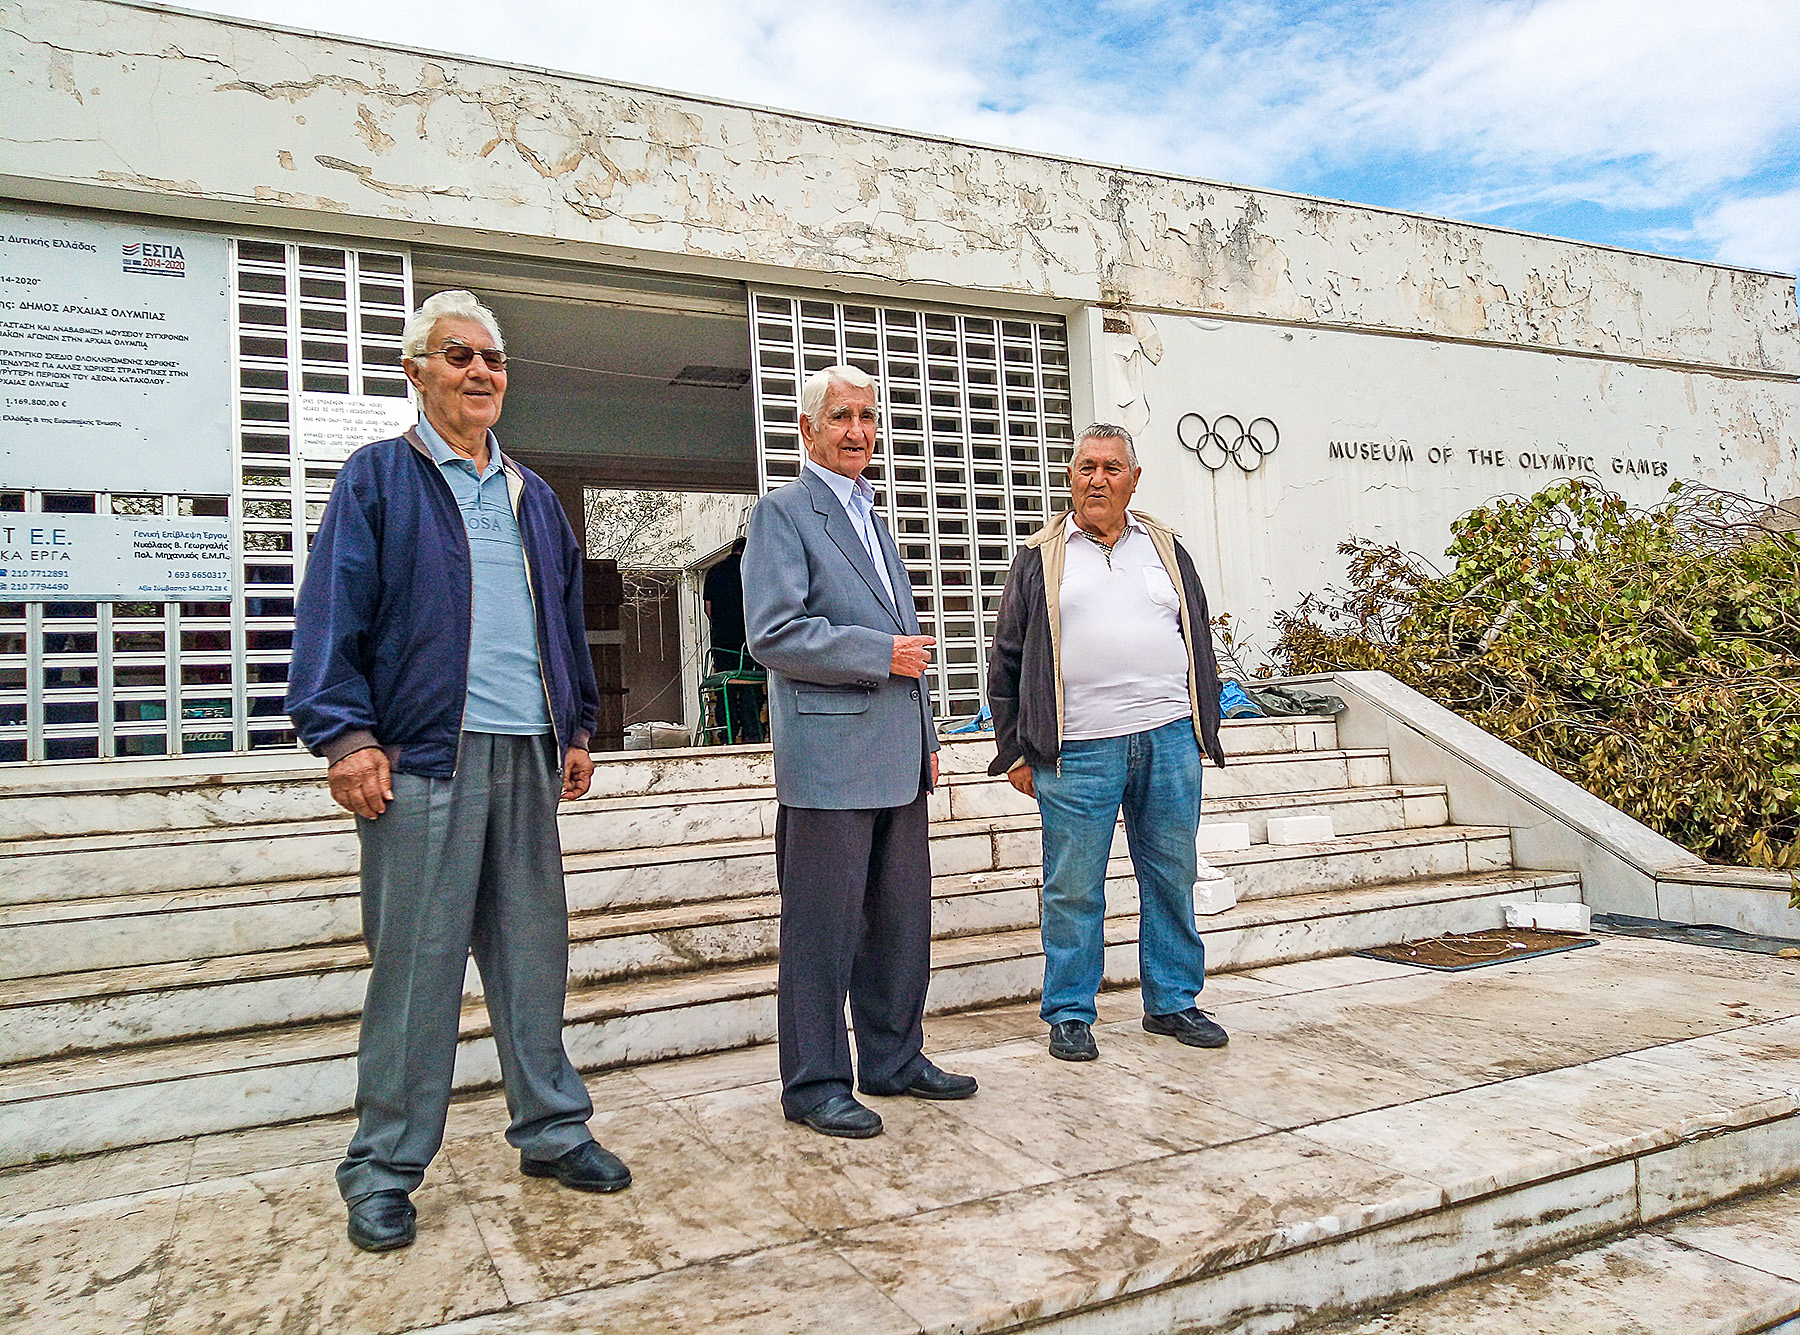 Αρχαία Ολυμπία: Τρεις "βετεράνοι" φύλακες μιλούν για το ανακαινιζόμενο Μουσείο των Σύγχρονων Ολυμπιακών Αγώνων- «Το μουσείο ήταν το δεύτερο σπίτι μας…»